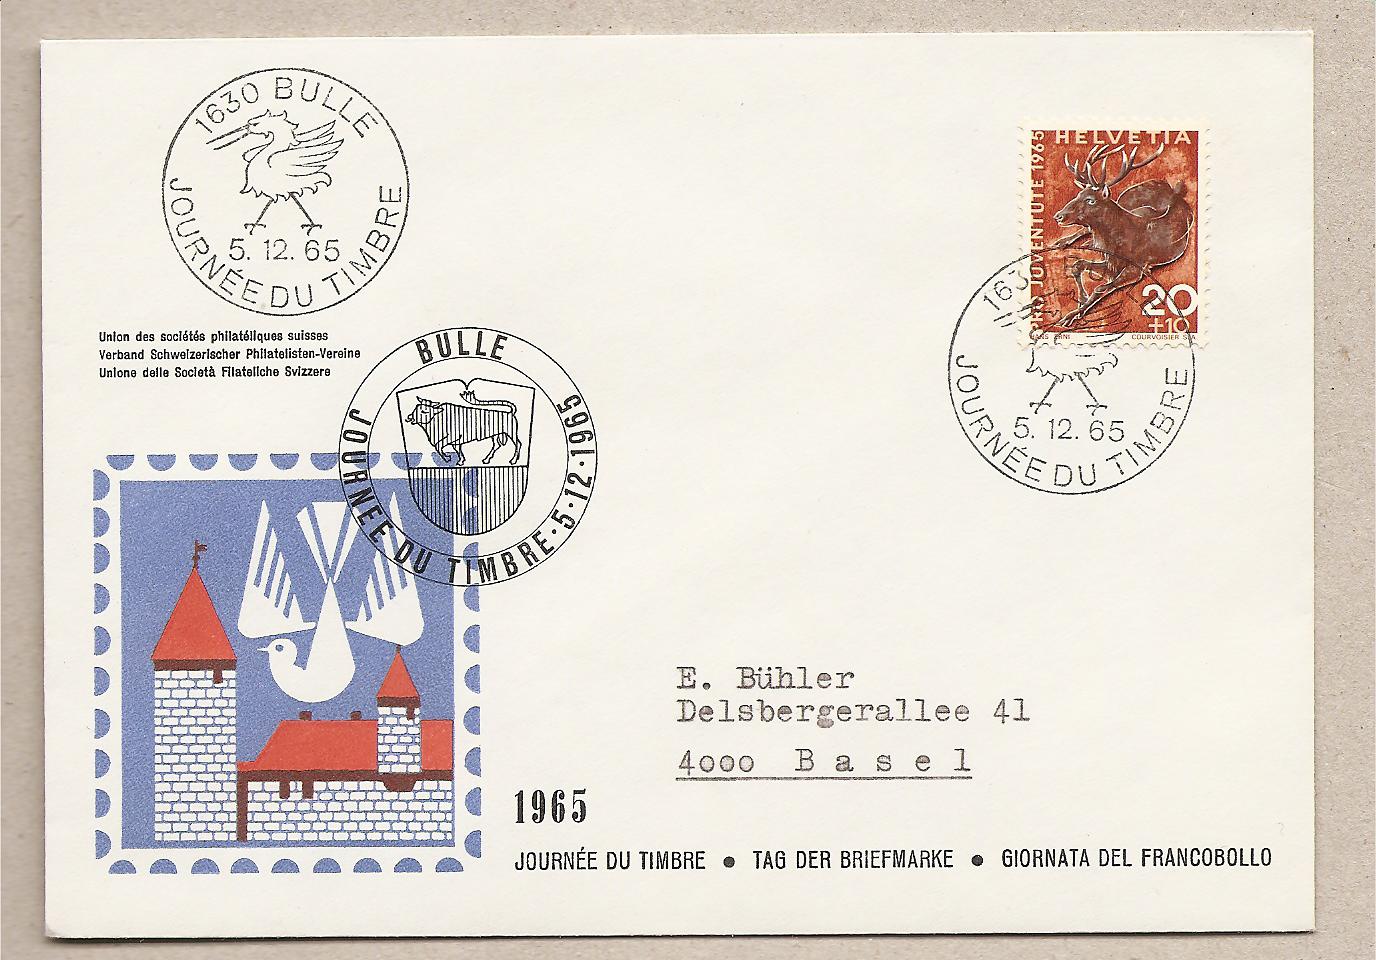 37596 - Svizzera - busta con annullo speciale:Giornata del francobollo - 1965